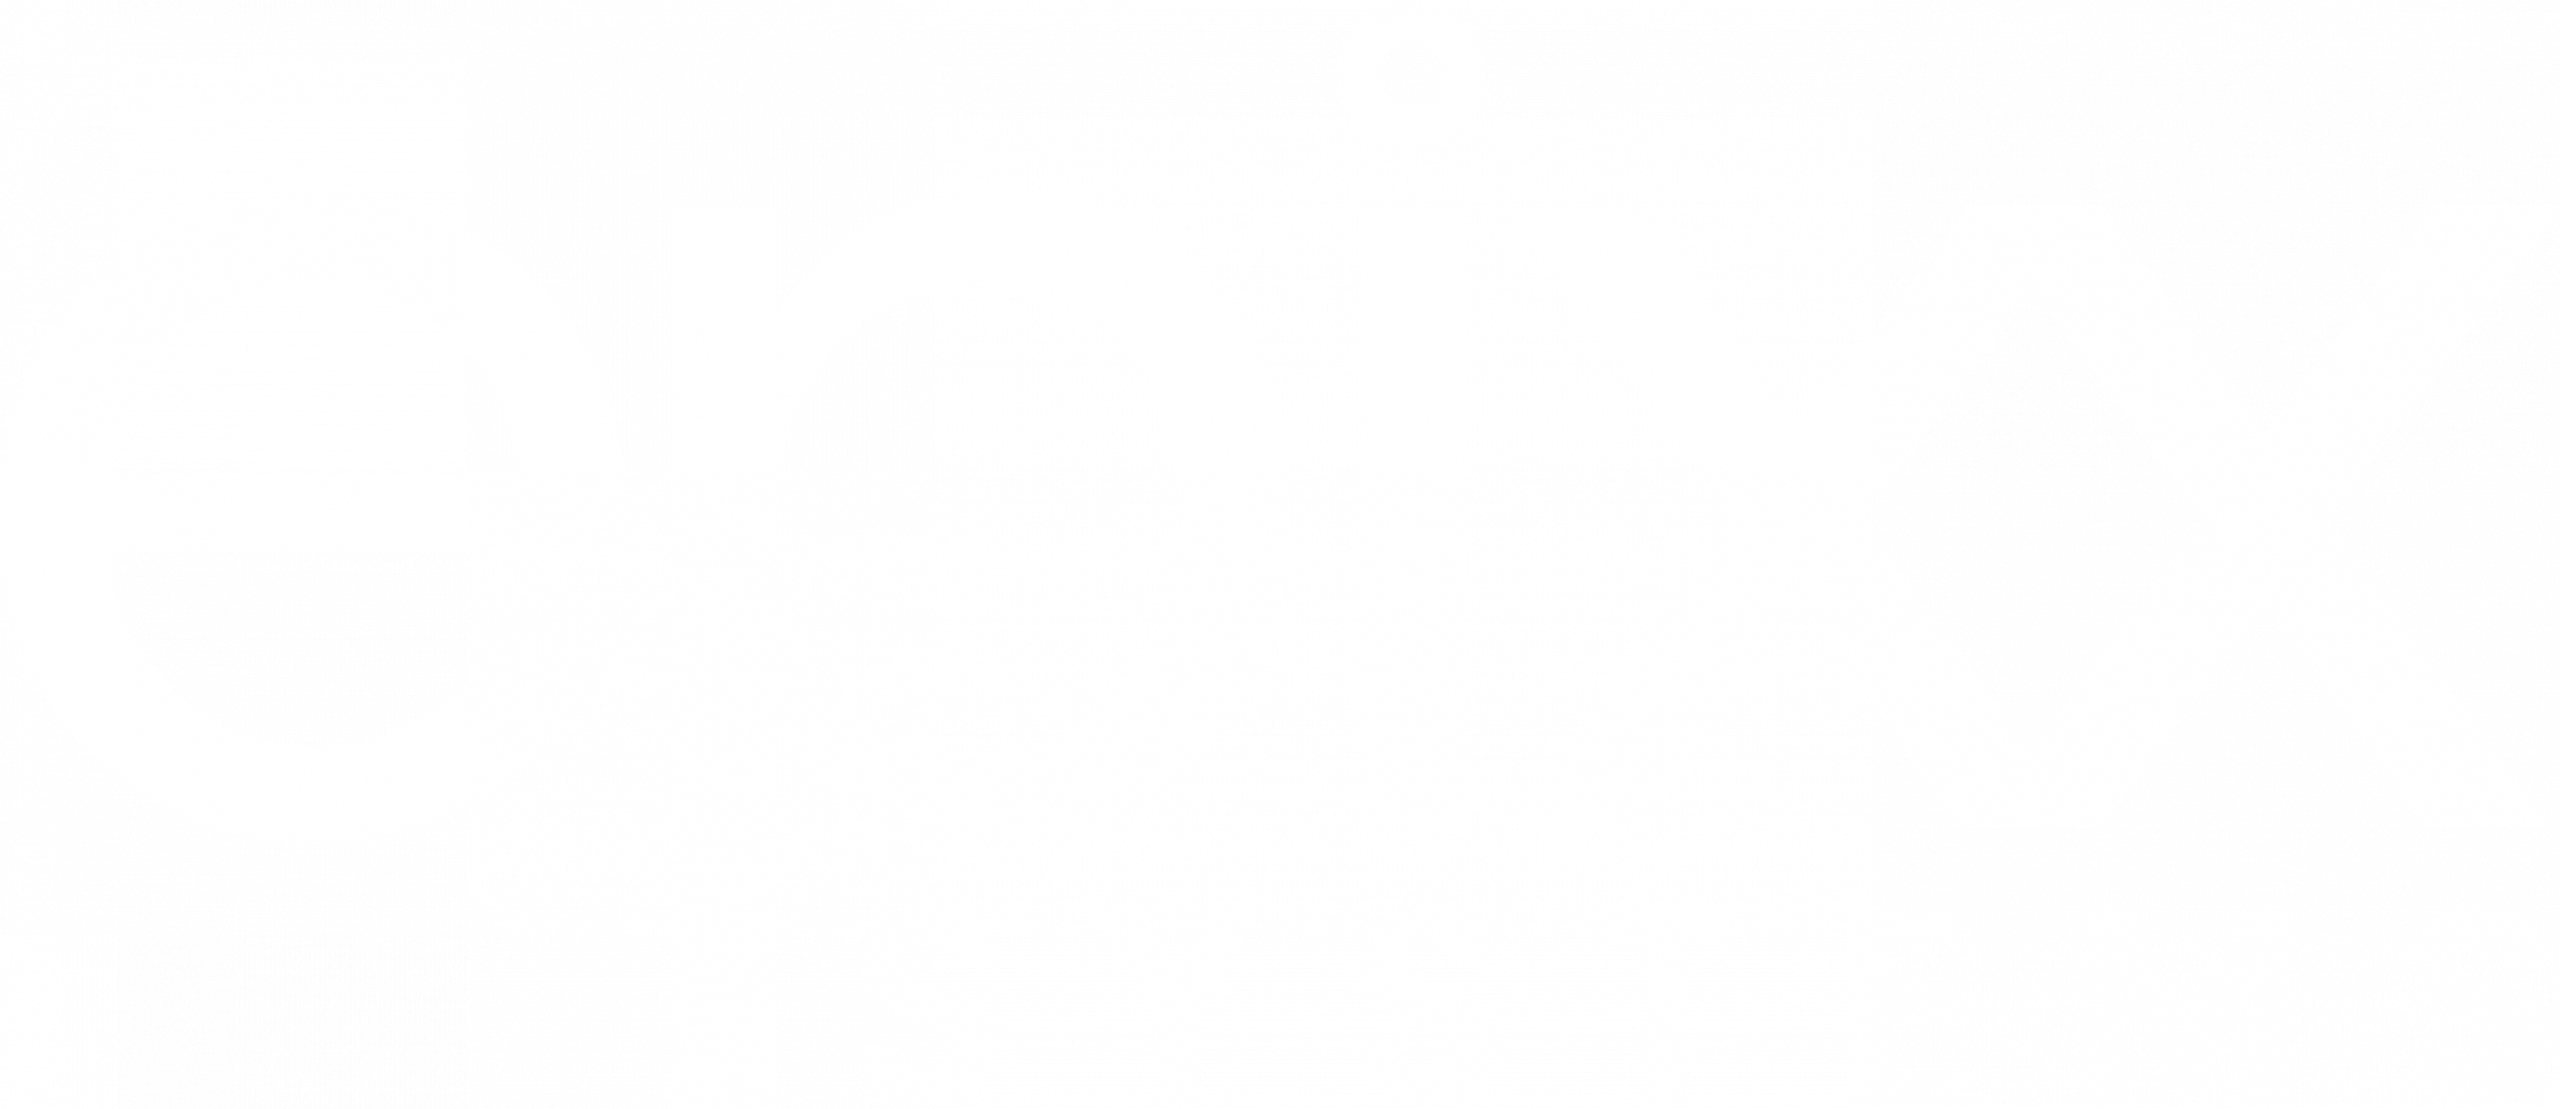 Epixx Systems logo